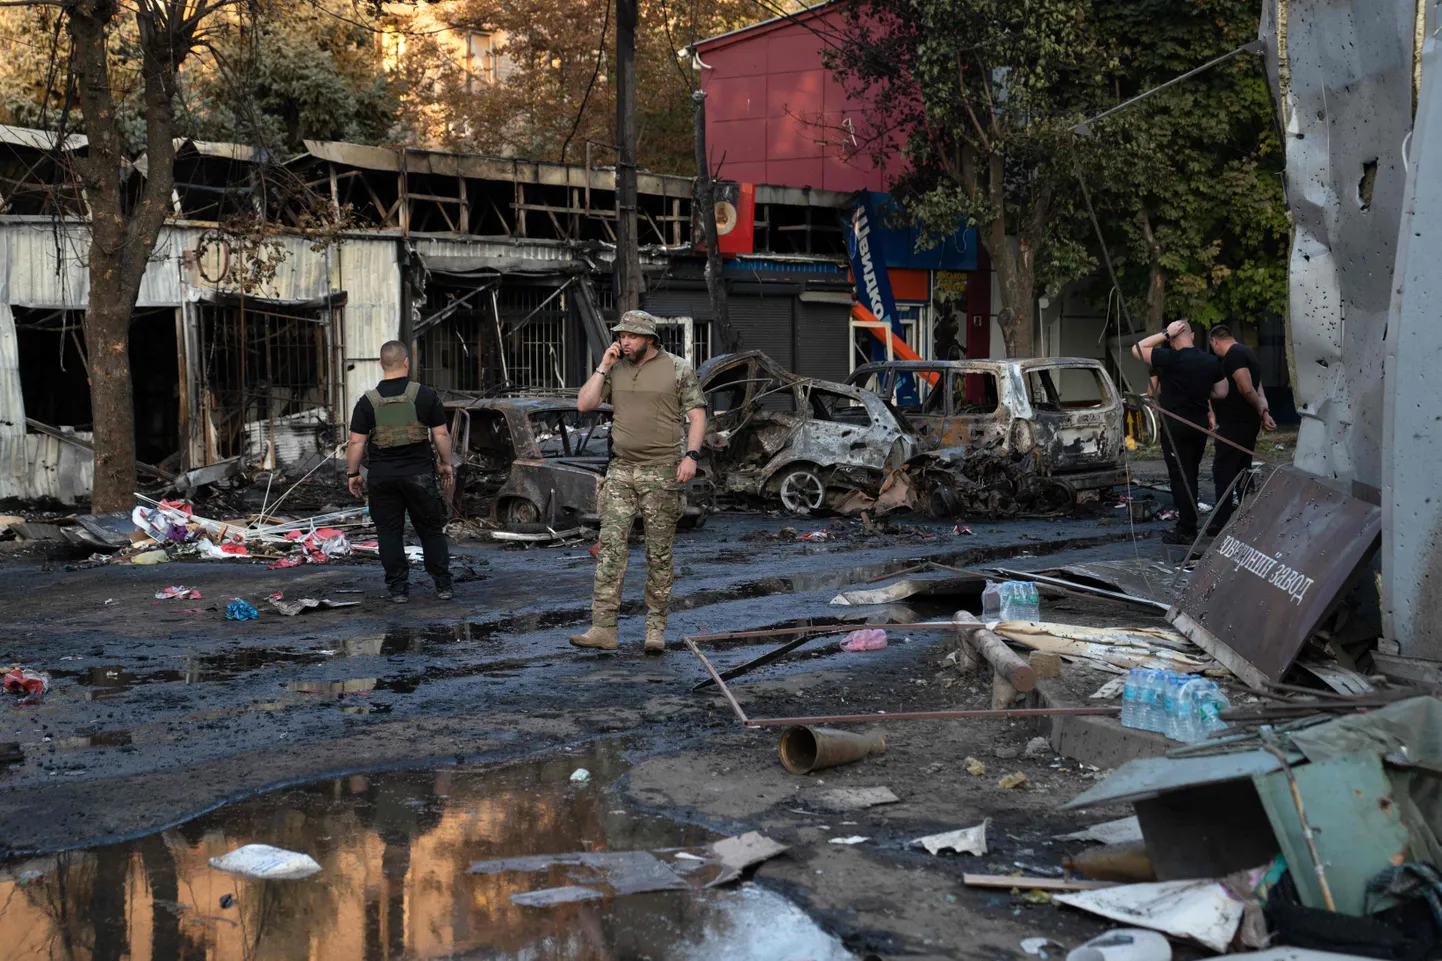 Venemaa sõjamasin jätkab oma hävitustööd. Ukraina sõjaväelane möödumas põlenud autodest, kui Venemaa rünnak surmas vähemalt 17 inimest eile Kostjantinivkas Ida-Ukrainas.